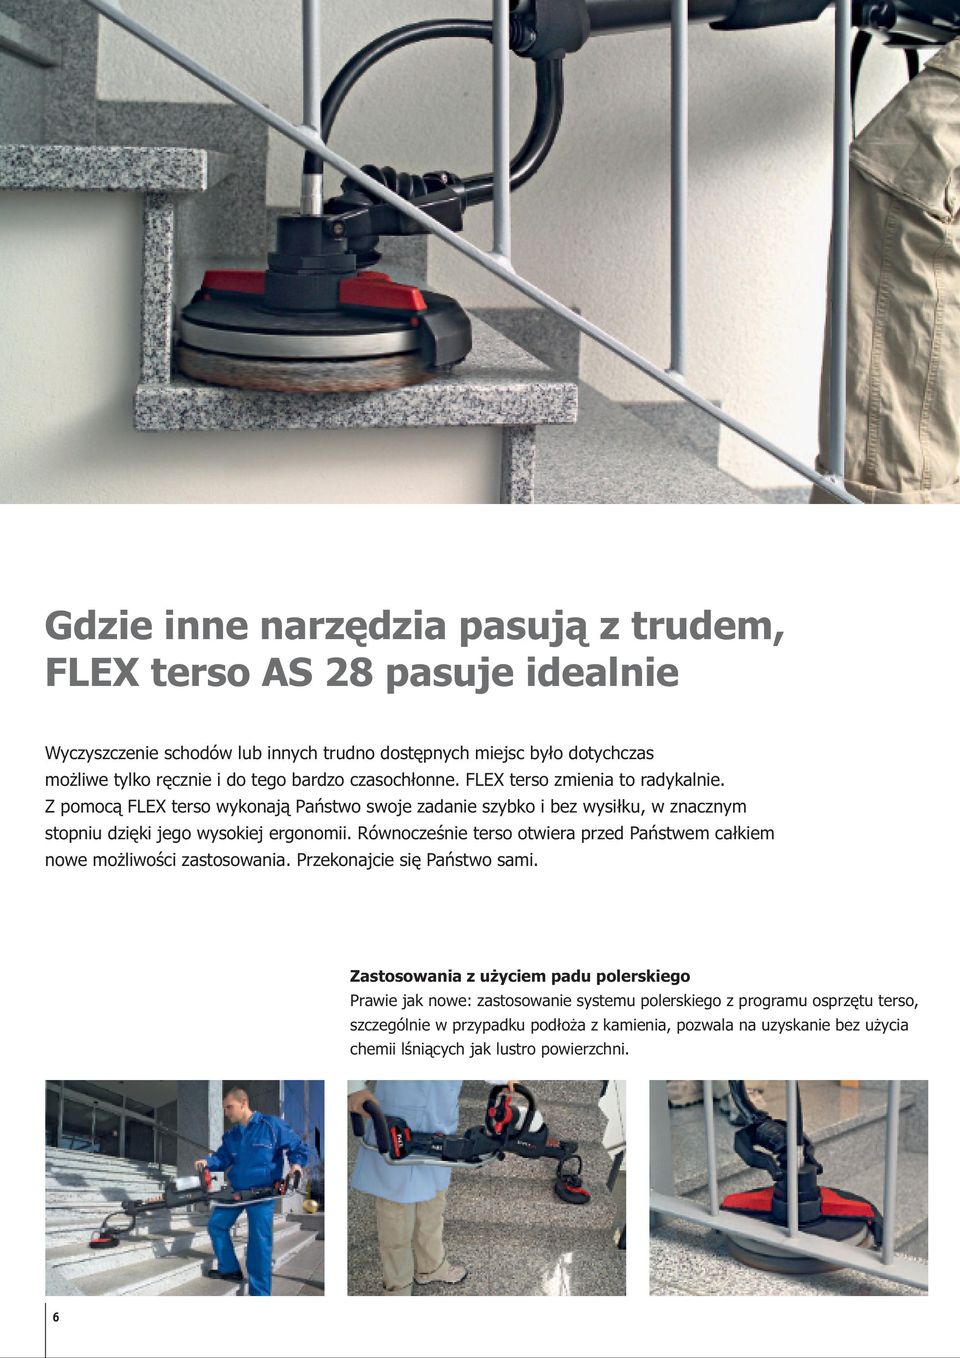 Z pomocą FLEX terso wykonają Państwo swoje zadanie szybko i bez wysiłku, w znacznym stopniu dzięki jego wysokiej ergonomii.